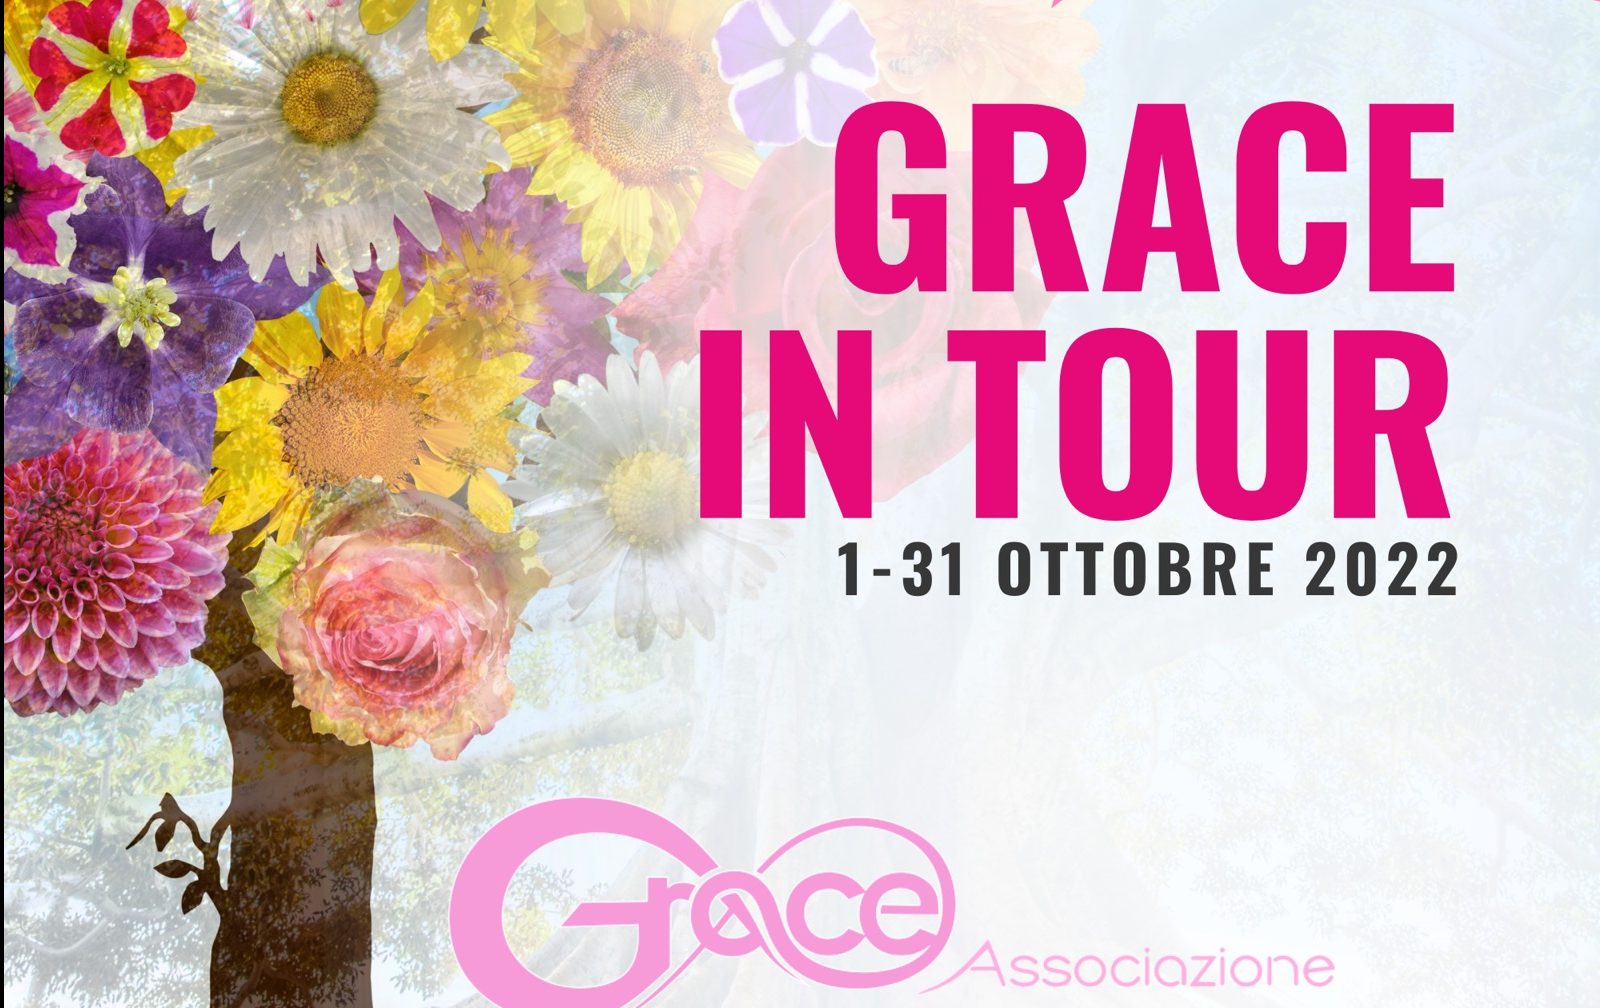 Reggio, al via l’October Grace’s in tour